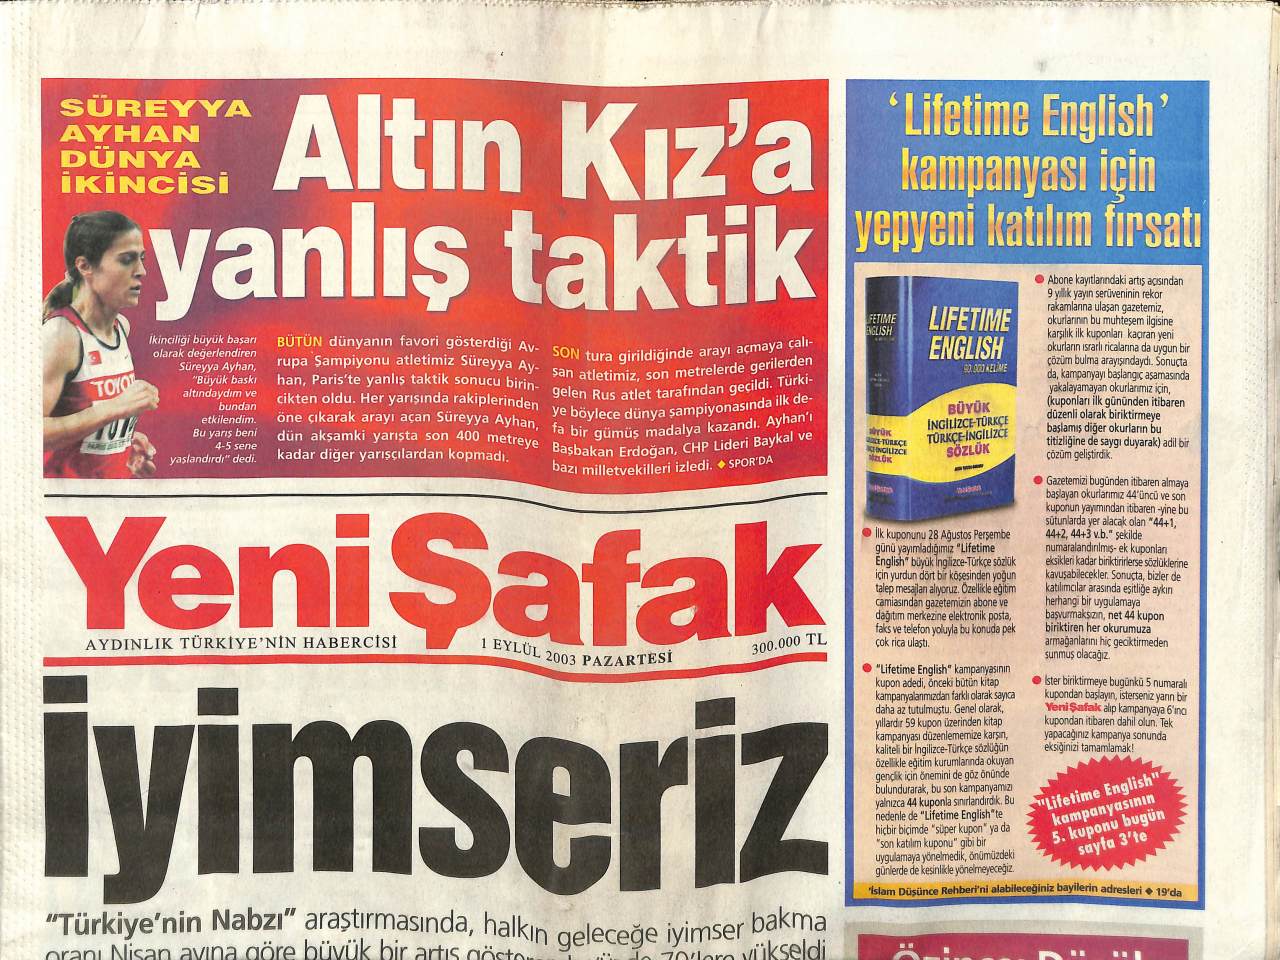 Yeni Safak Gazetesi 1 Eylul 03 Altin Kiz Sureyya Ayhan A Yanlis Taktik Gz Yeni Safak Gazetesi